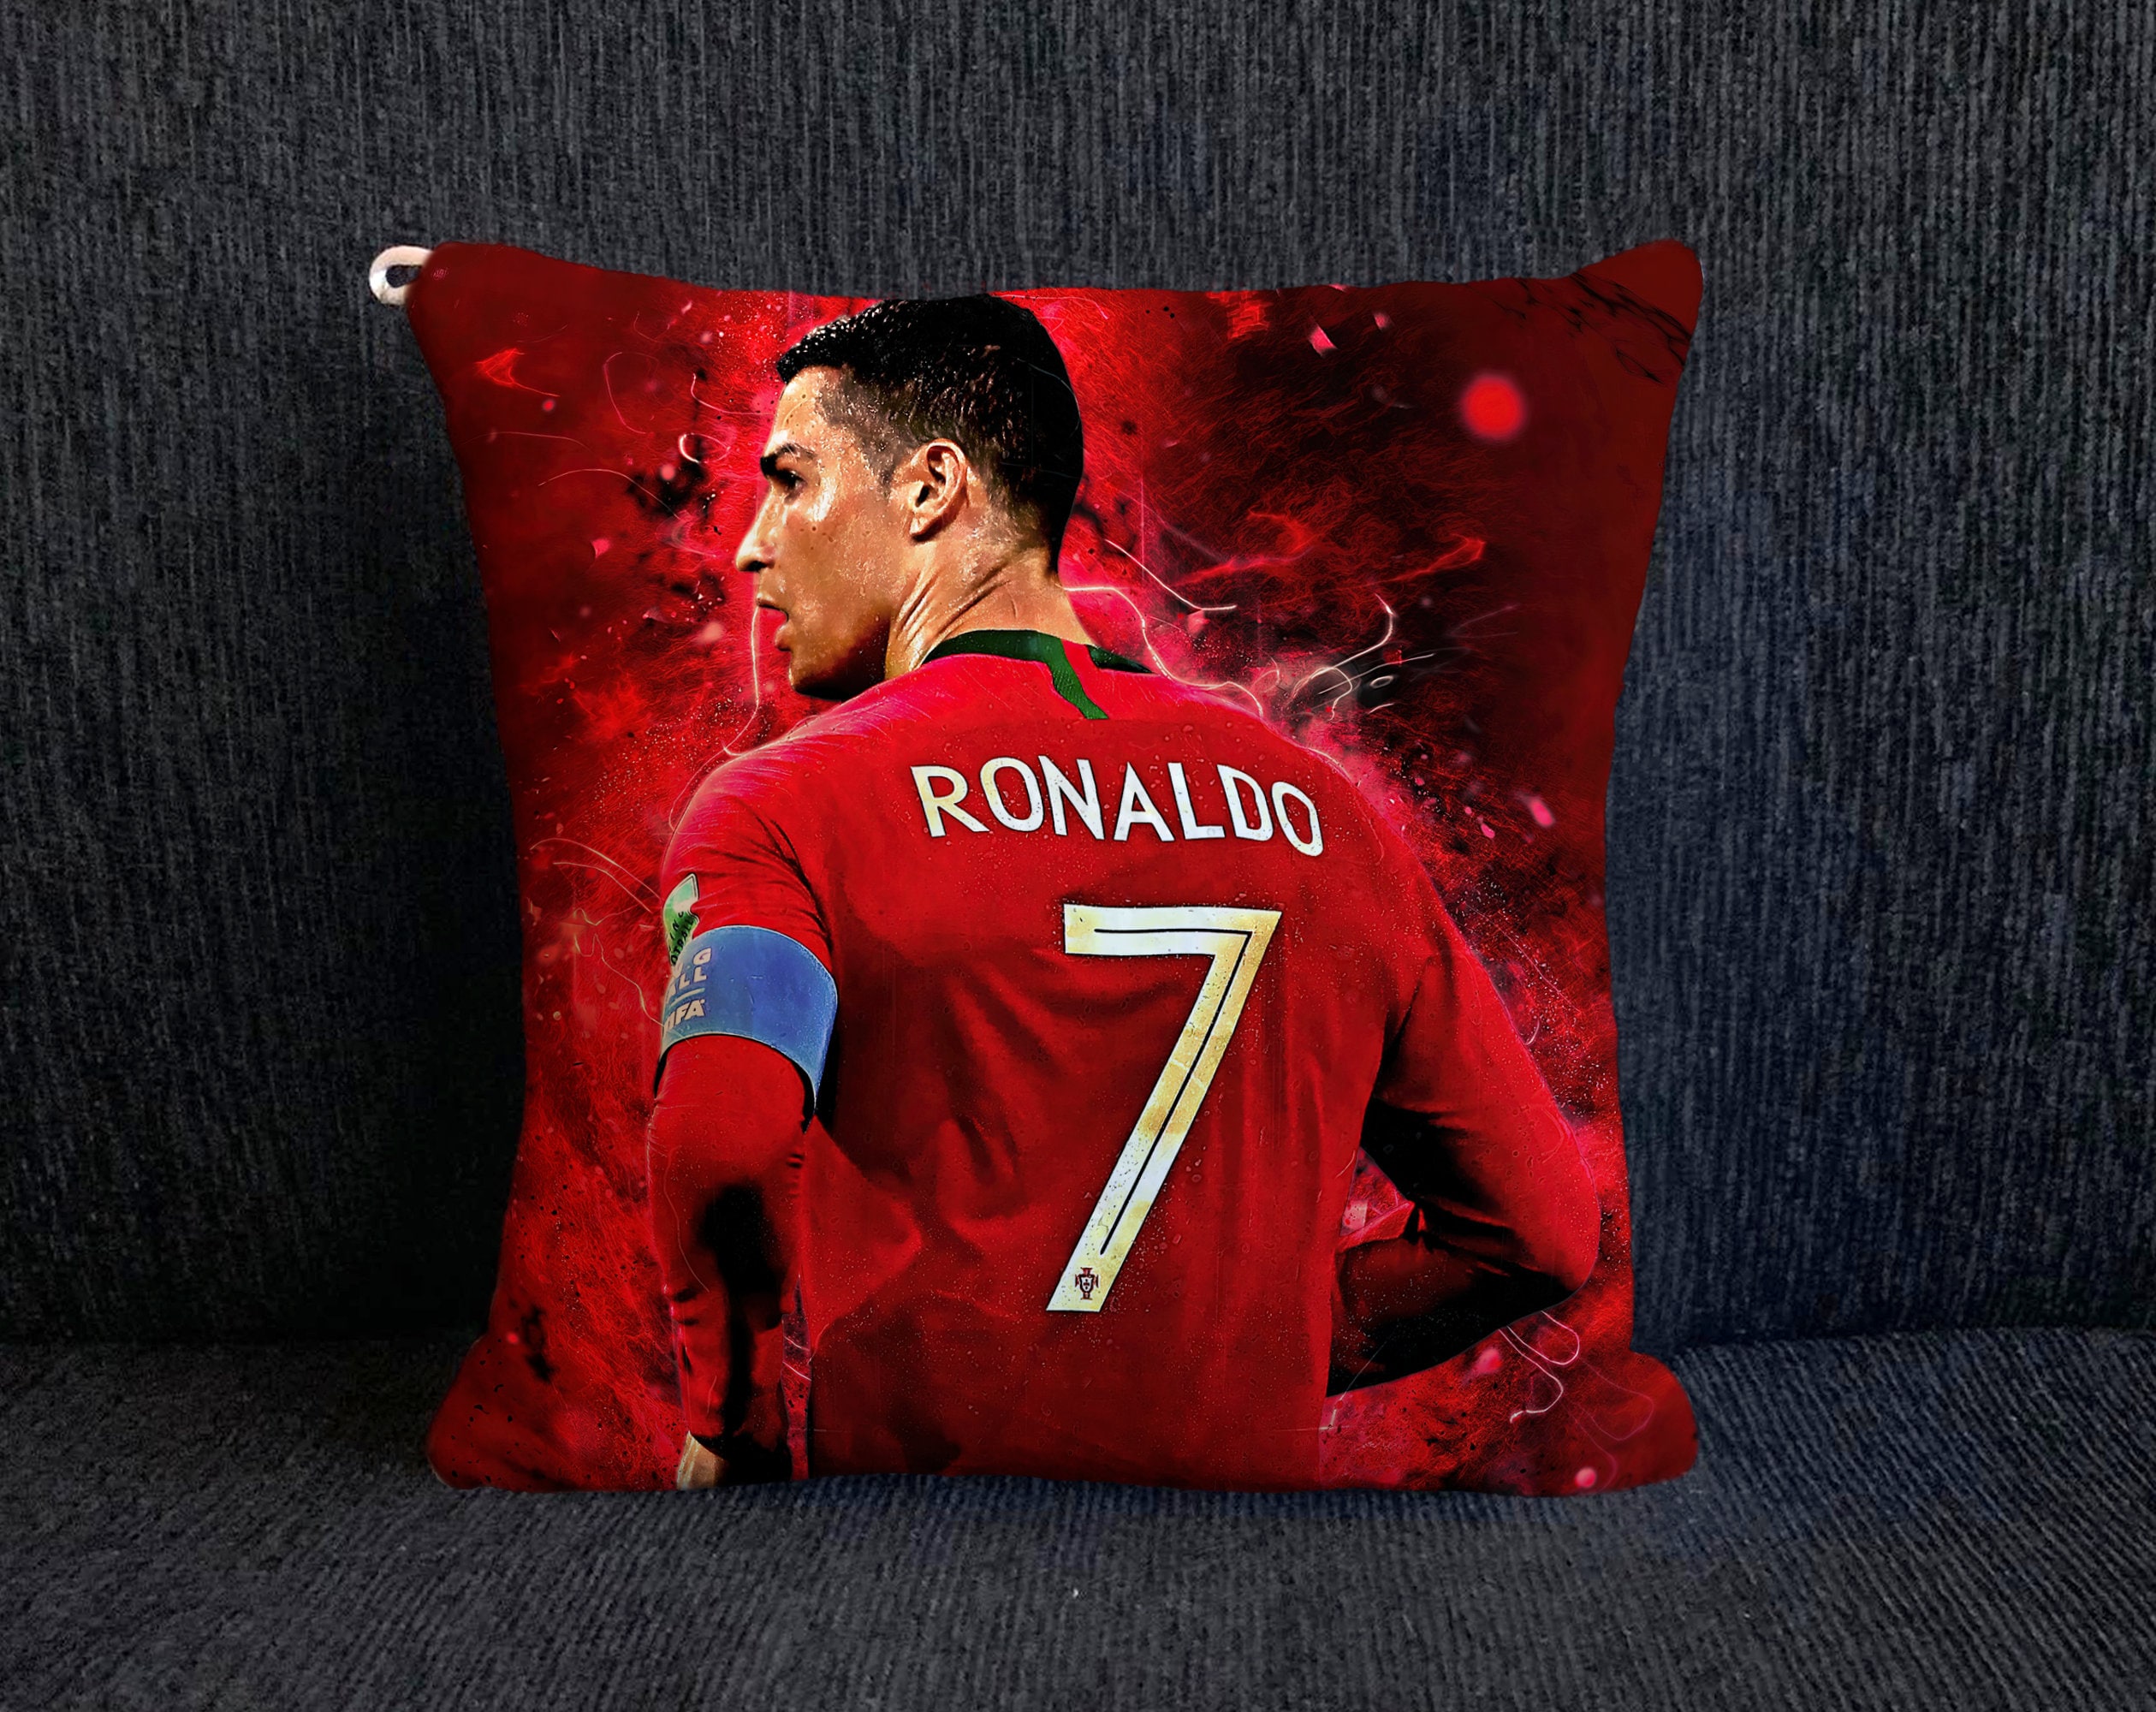 Ronaldo bedding - Etsy France